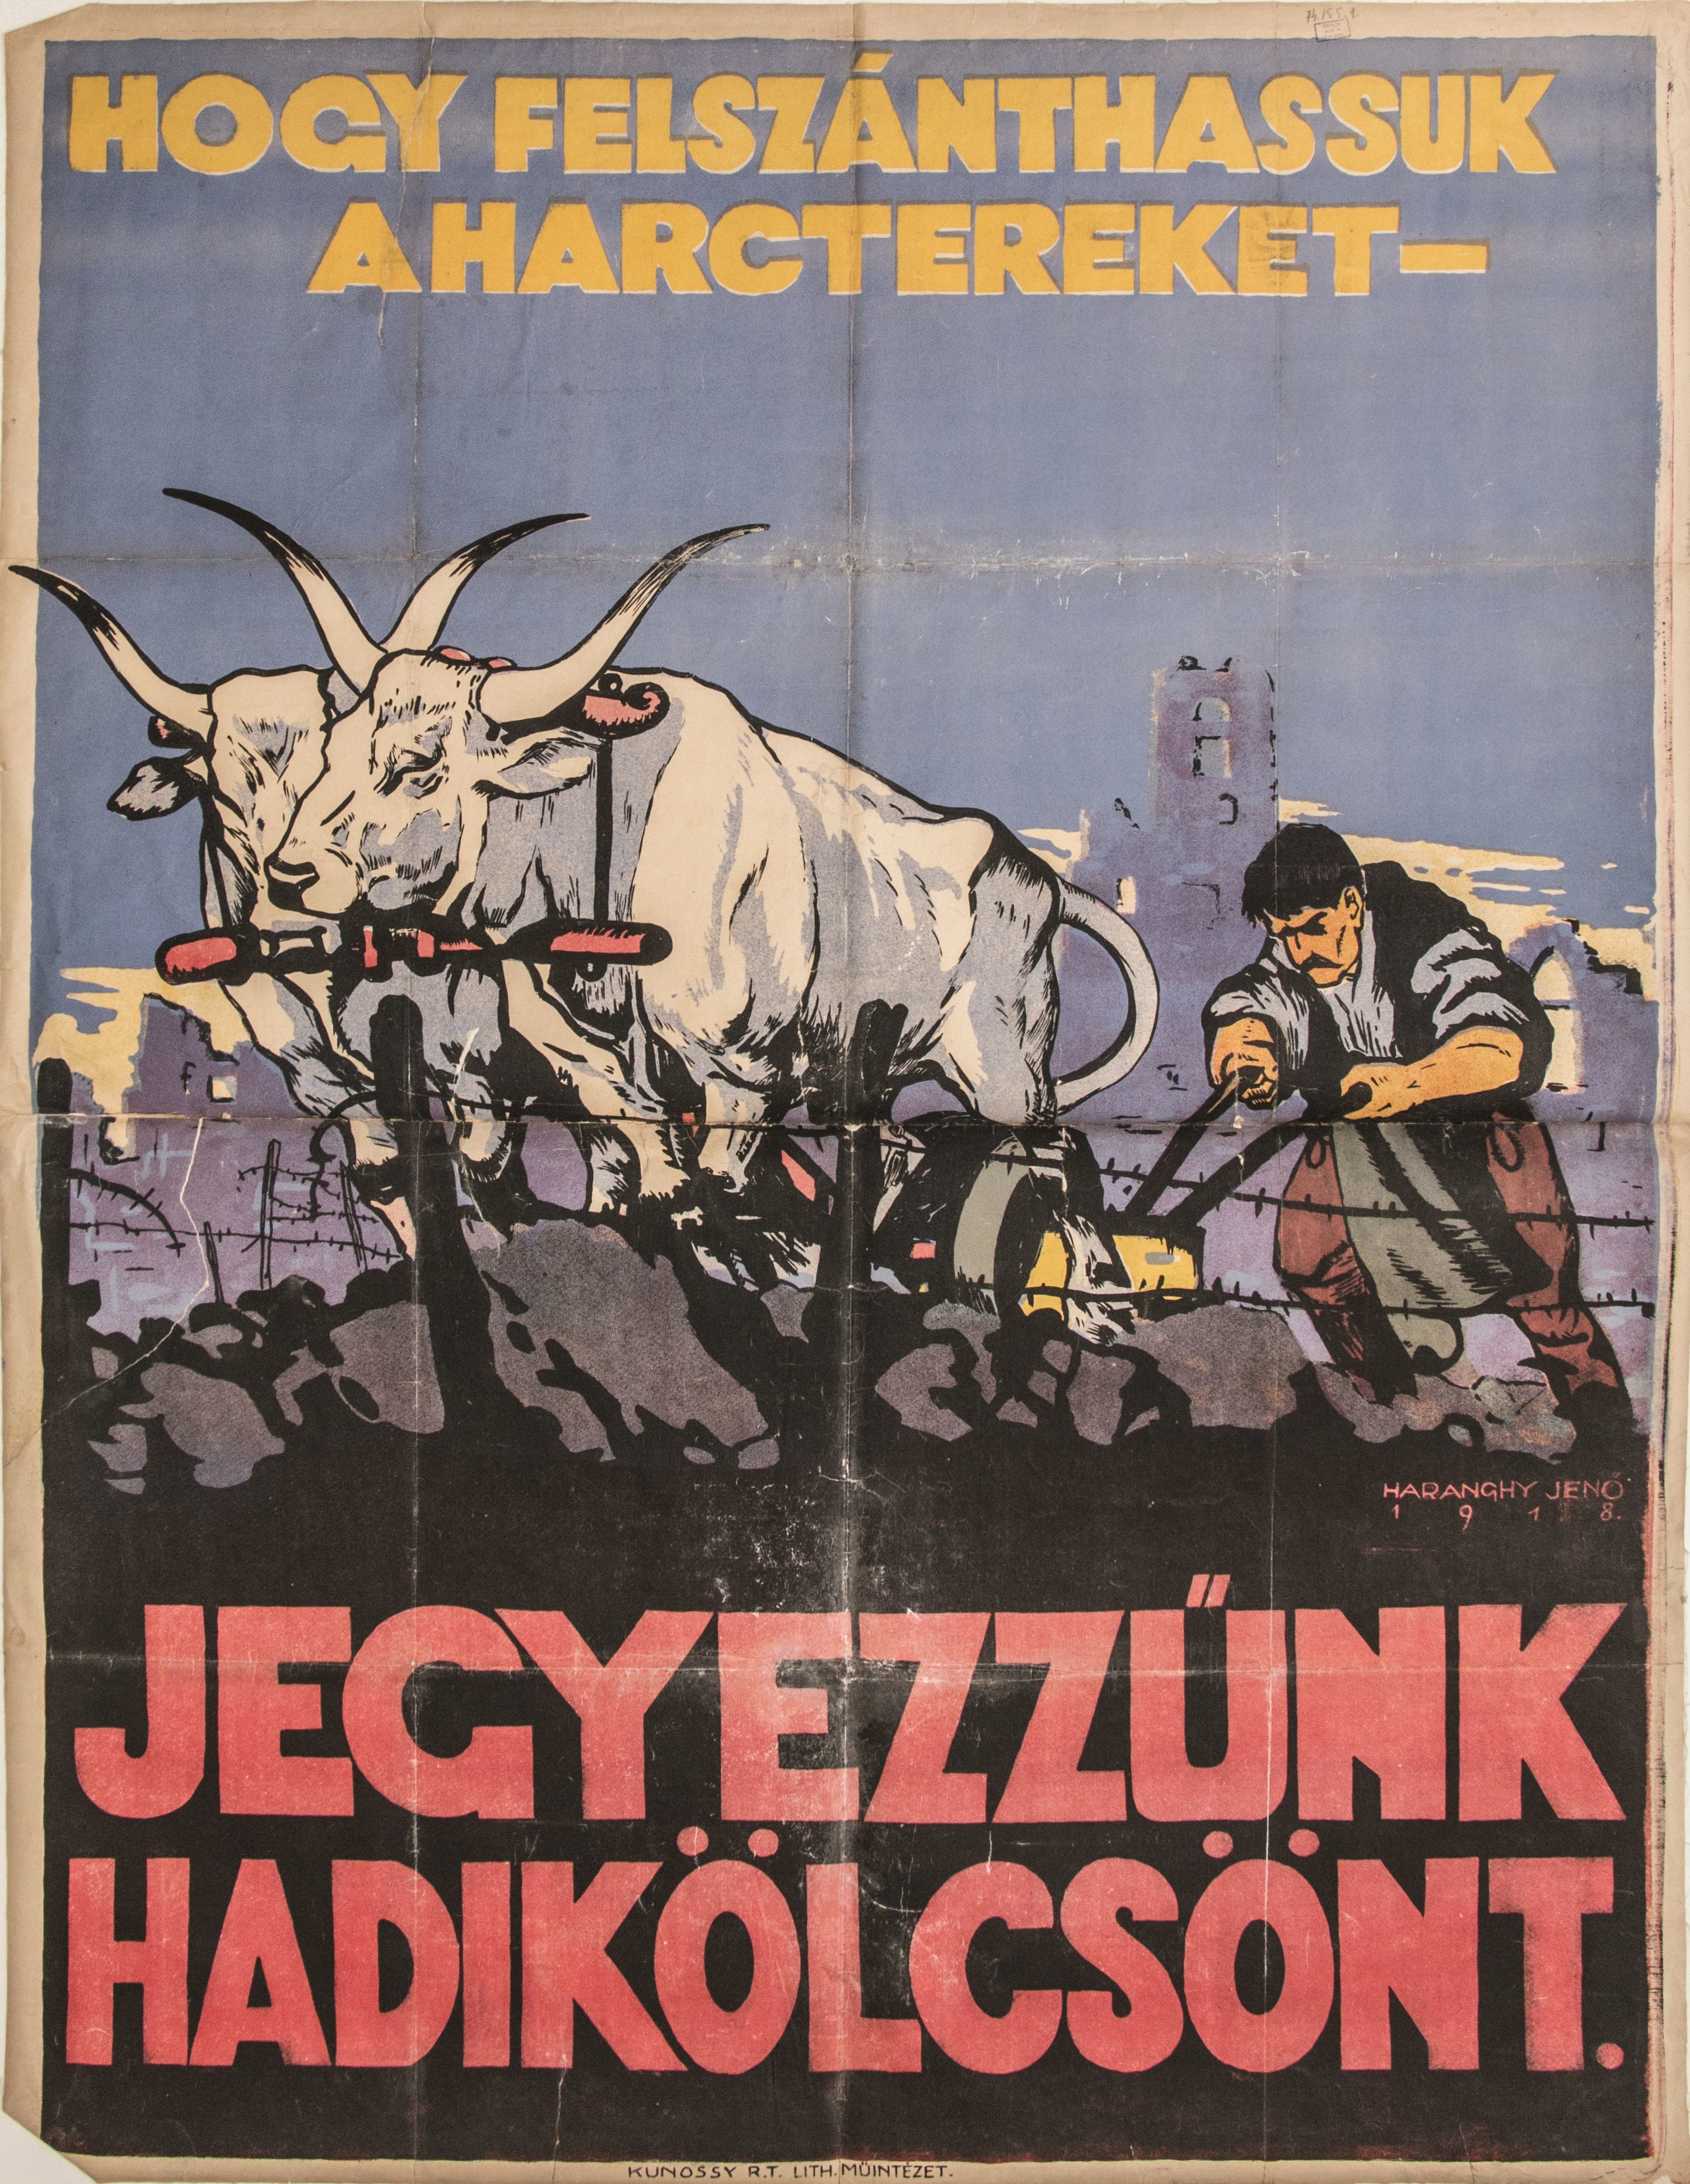 Plakát, Hogy felszánthassuk a harctereket, jegyezzünk hadikölcsönt, 1918 (Ferenczy Múzeumi Centrum CC BY-NC-SA)